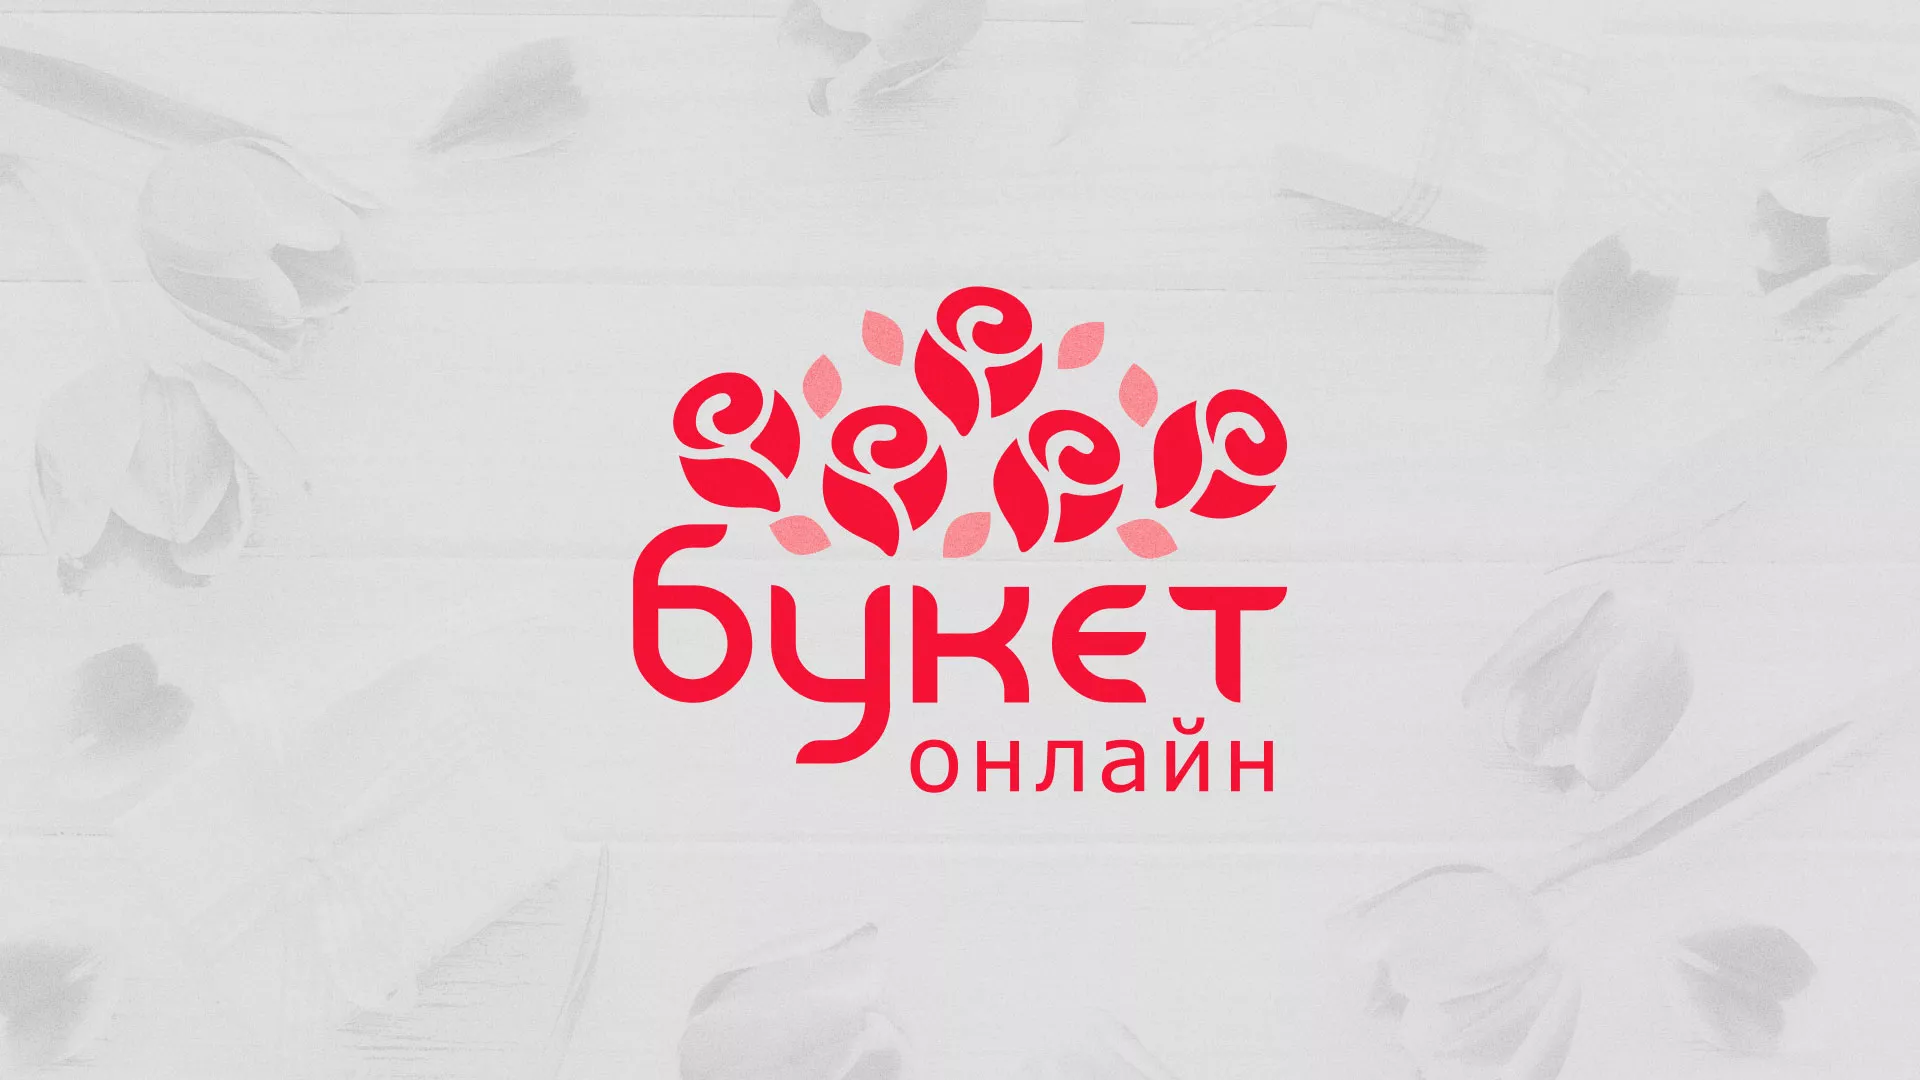 Создание интернет-магазина «Букет-онлайн» по цветам в Александровске